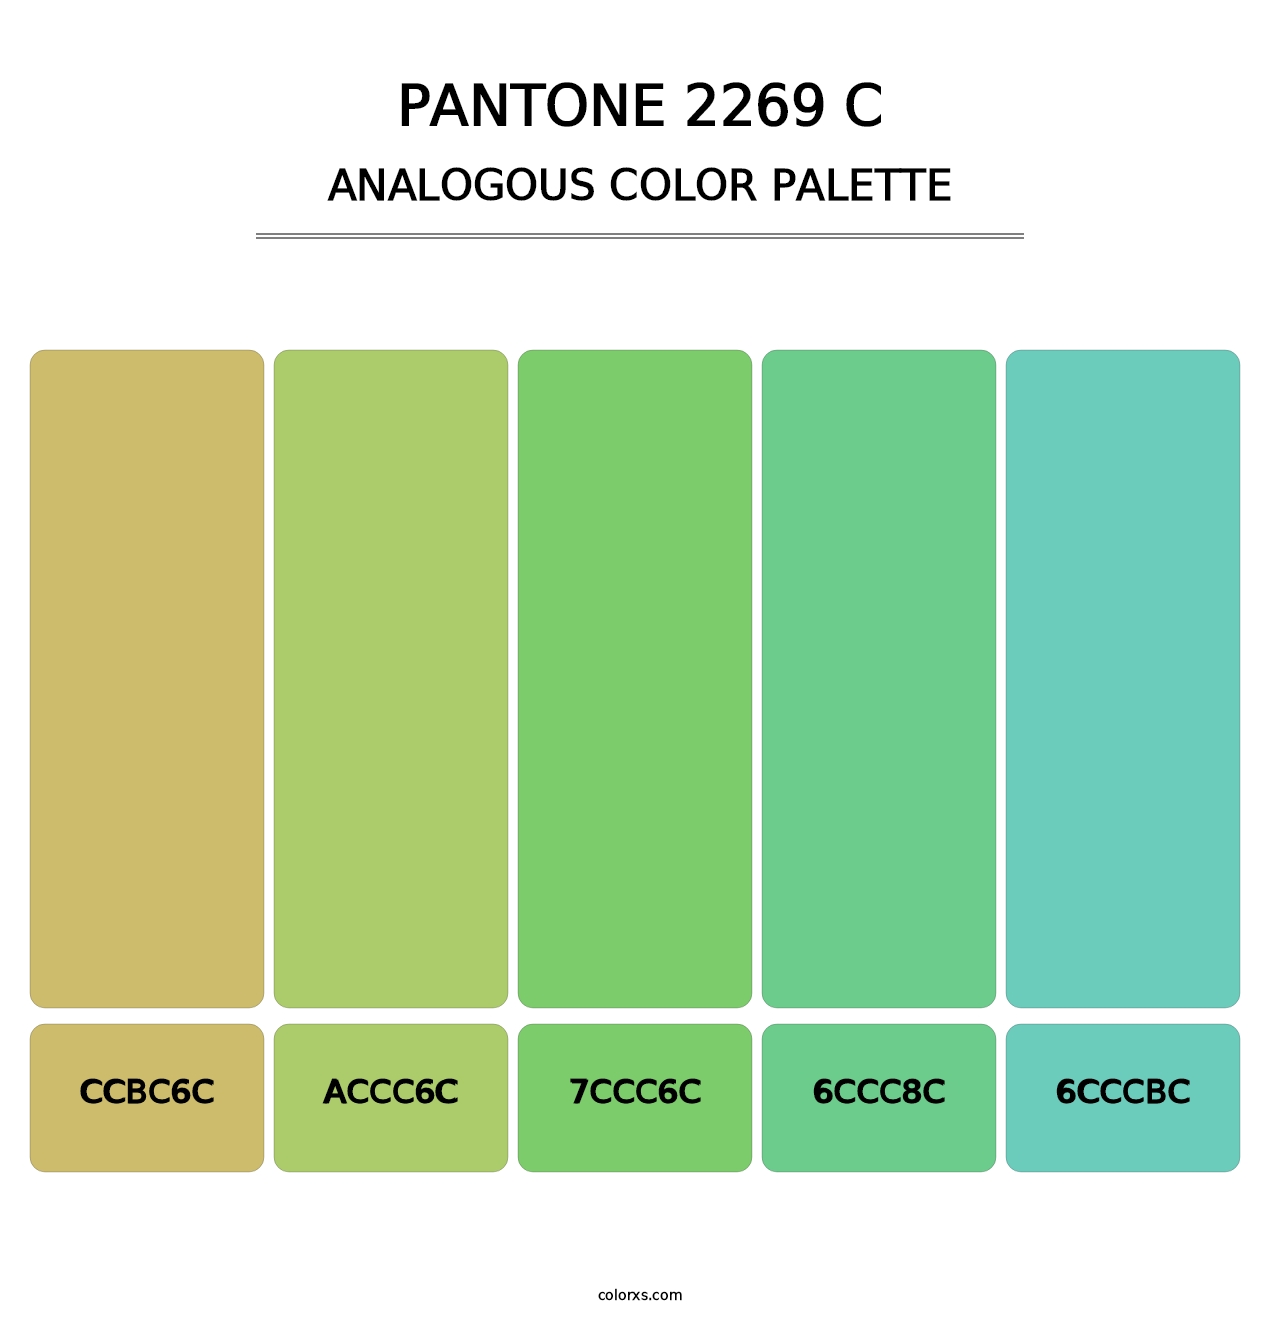 PANTONE 2269 C - Analogous Color Palette